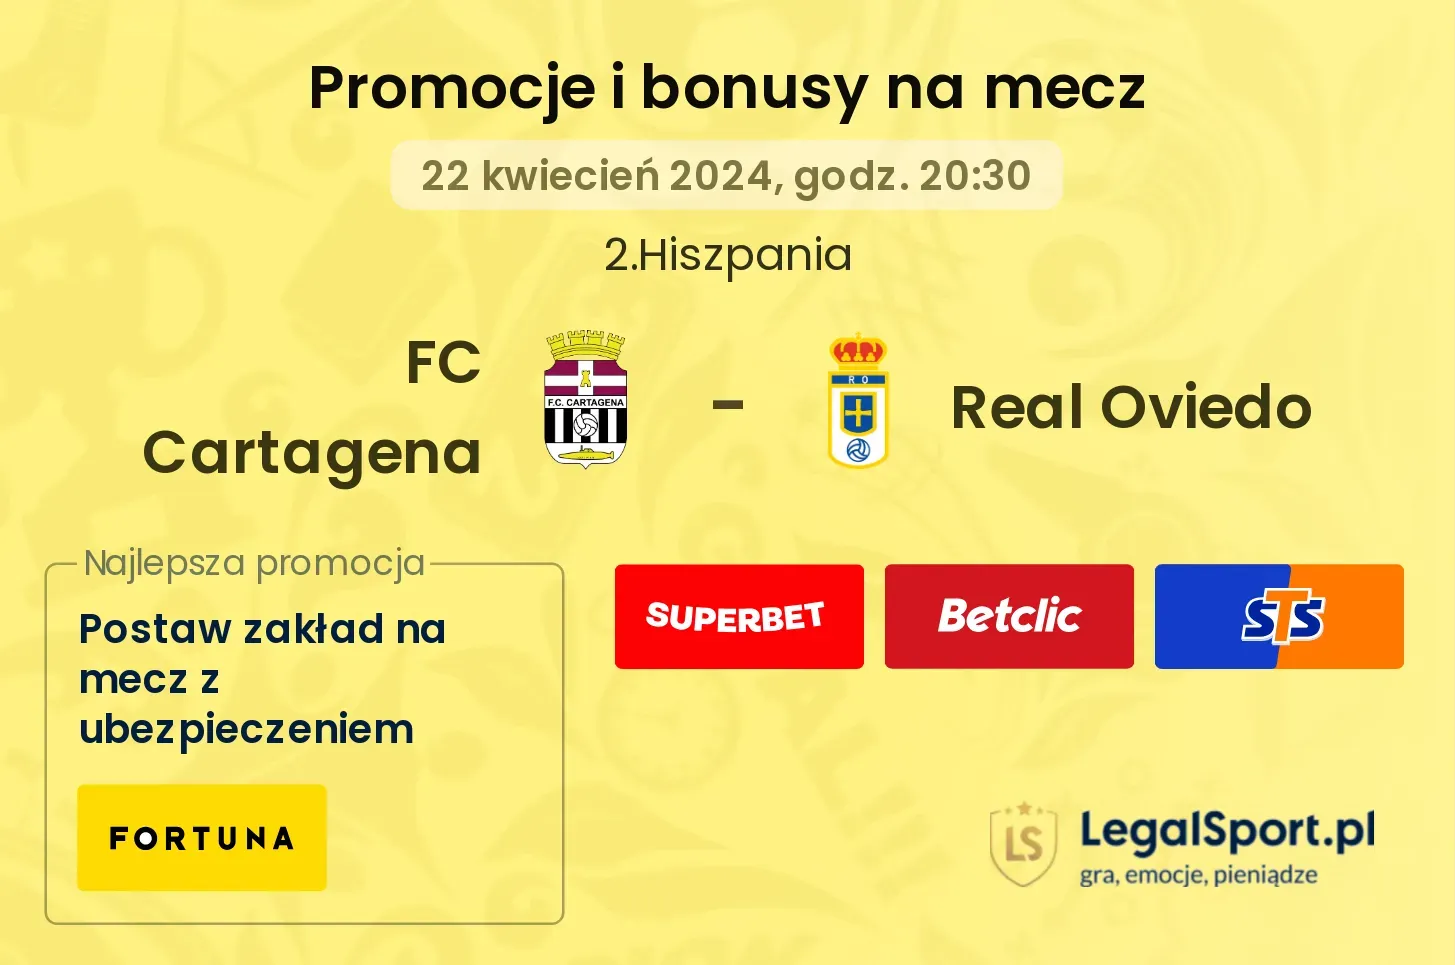 FC Cartagena - Real Oviedo promocje bonusy na mecz